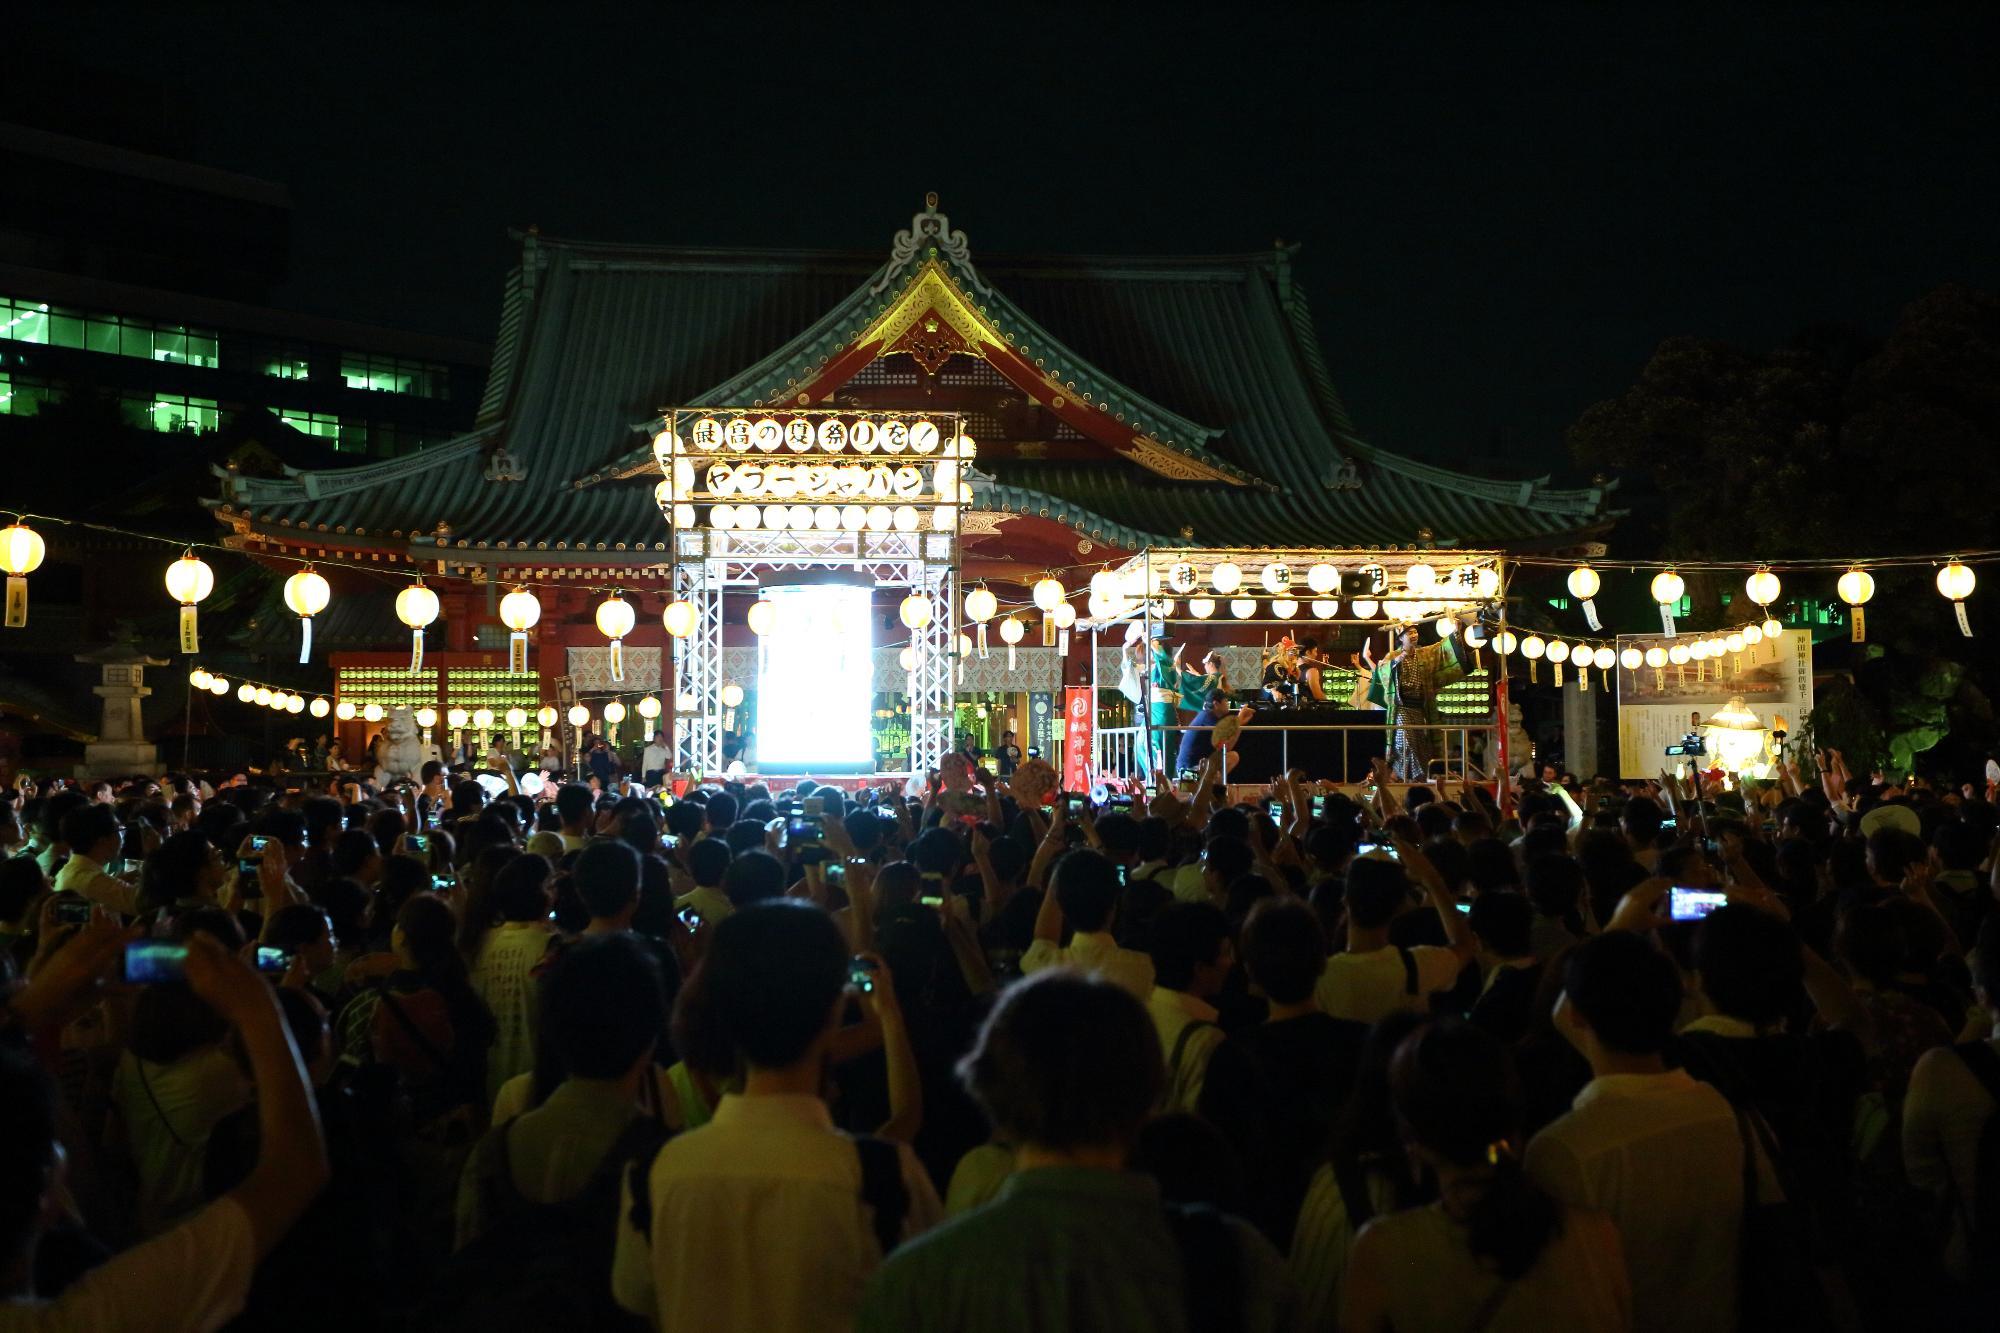 提灯の明かりが灯された靖国神社に集まった大勢の方々の後ろ姿を写した写真